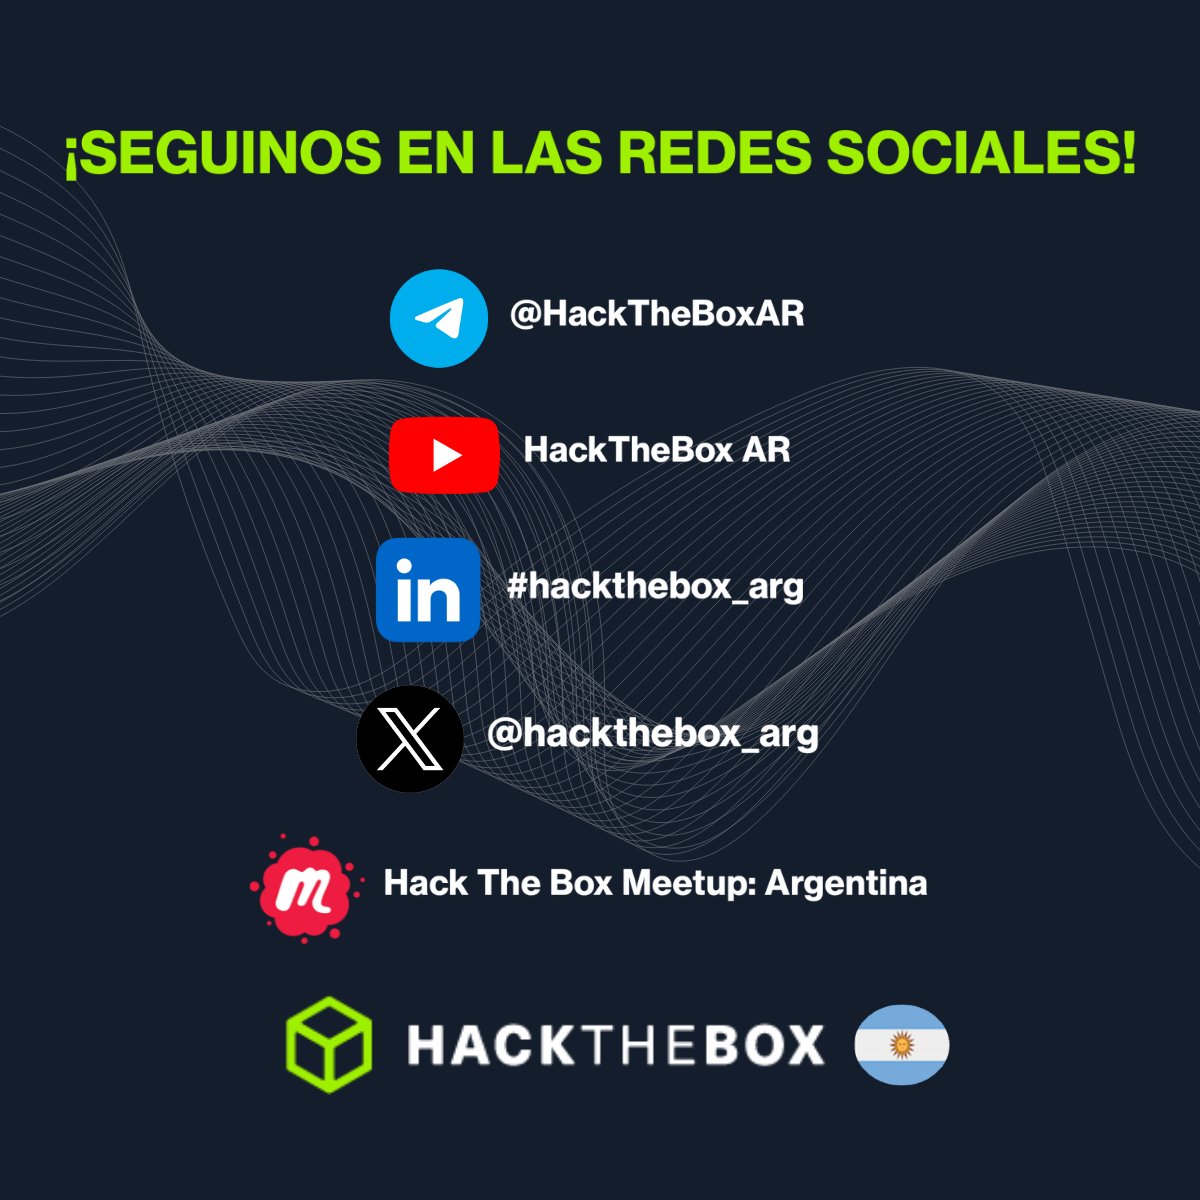 Buenas.... sólo pasamos a dejarles un recordatorio 😊 

Buen jueves!!! 💫 

@hackthebox_eu  #hackthebox_arg #HTB #HackTheBox #Meetup #YouTube #Telegram #CyberSecurity #Twitter #Ciberseguridad @YouTube #CyberSec #HappyHacking @hackthebox_arg